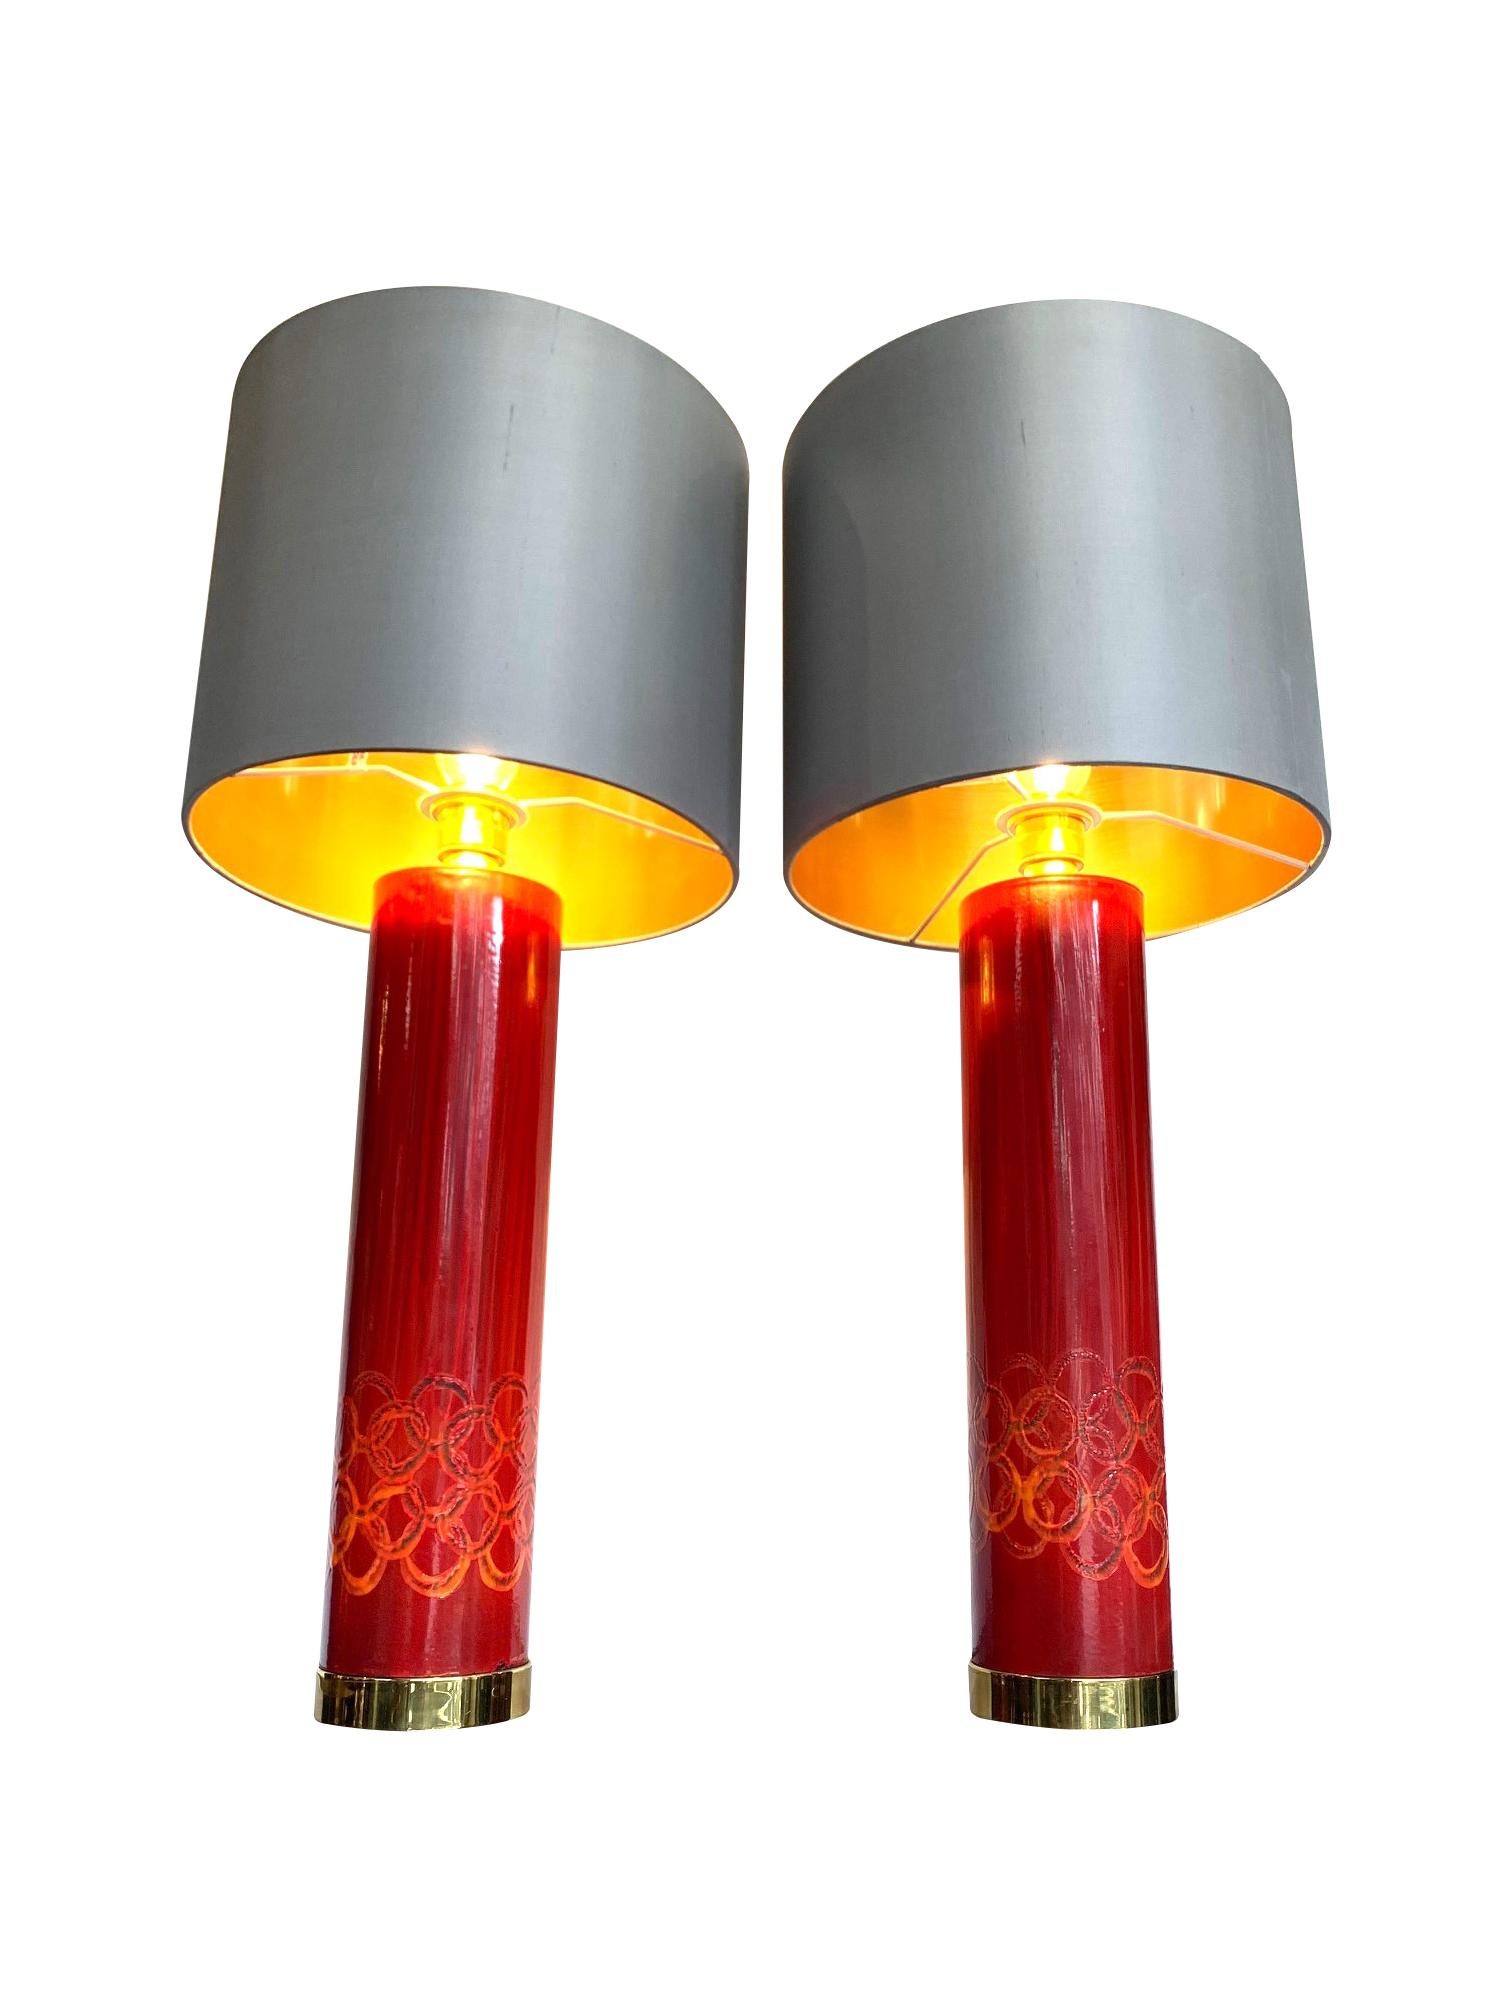 Une belle paire de lampes suédoises en céramique rouge, chacune avec un détail circulaire en céramique orange sur le bas de la base. Avec des garnitures et des plaques supérieures en laiton, montées sur des bases en laiton. Recâblé avec de nouveaux